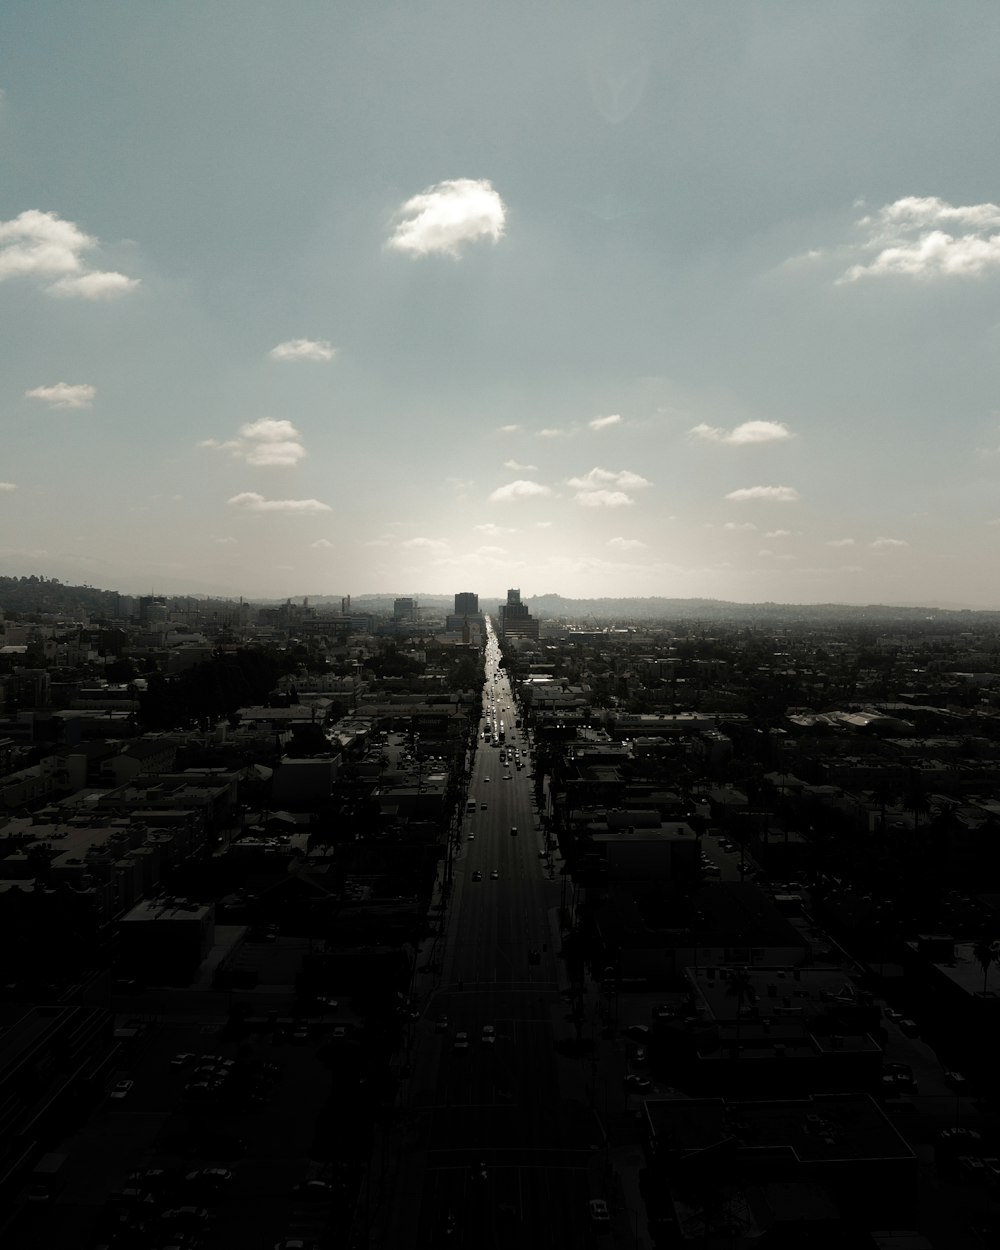 Photographie en niveaux de gris de la ville avec des immeubles de grande hauteur regardant la route